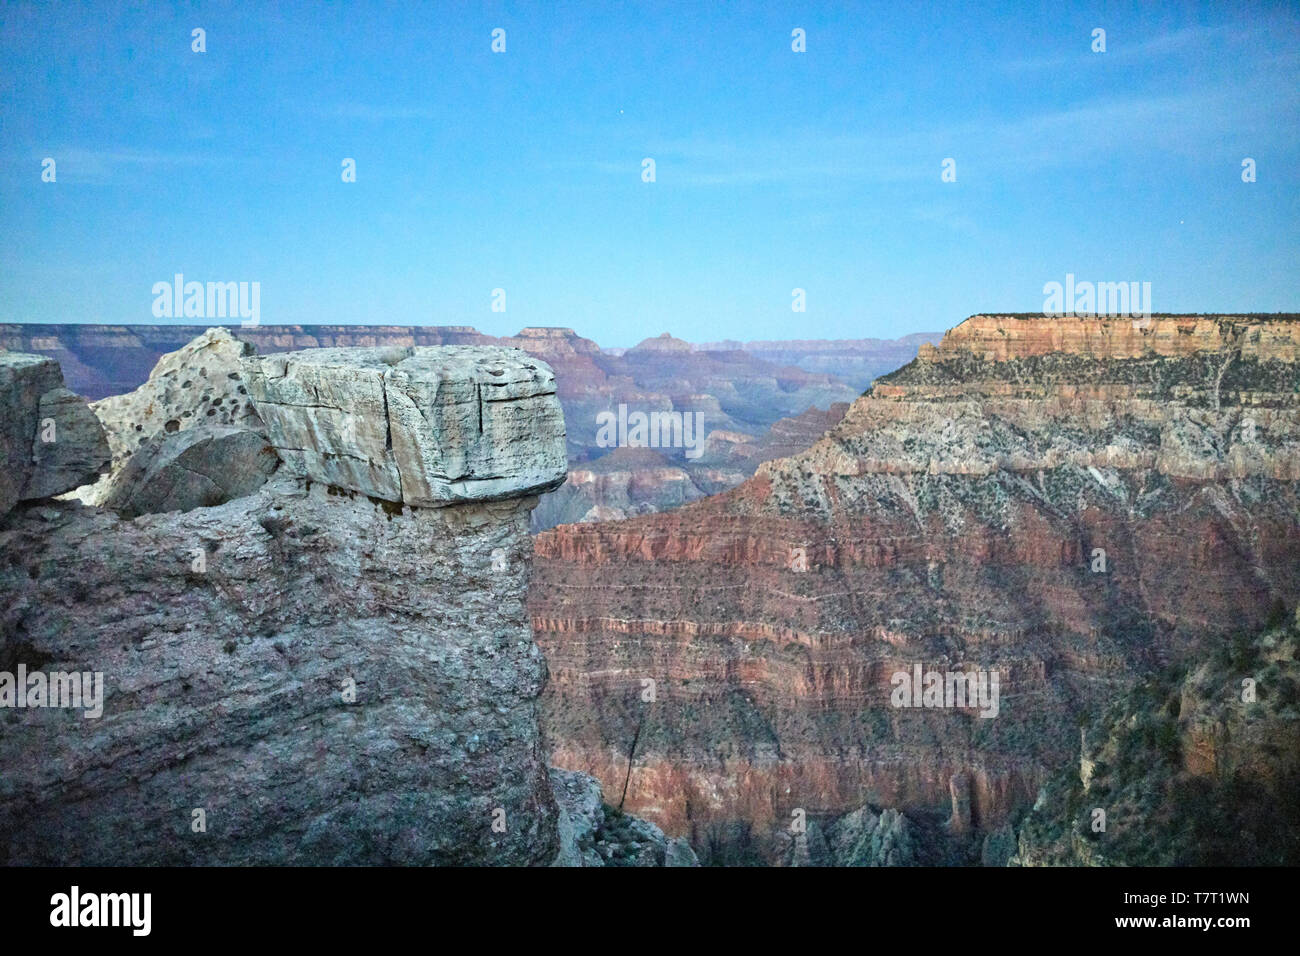 Vue Le Parc National du Grand Canyon South Rim abruptes canyon creusé par le fleuve Colorado dans l'Arizona, United State Banque D'Images